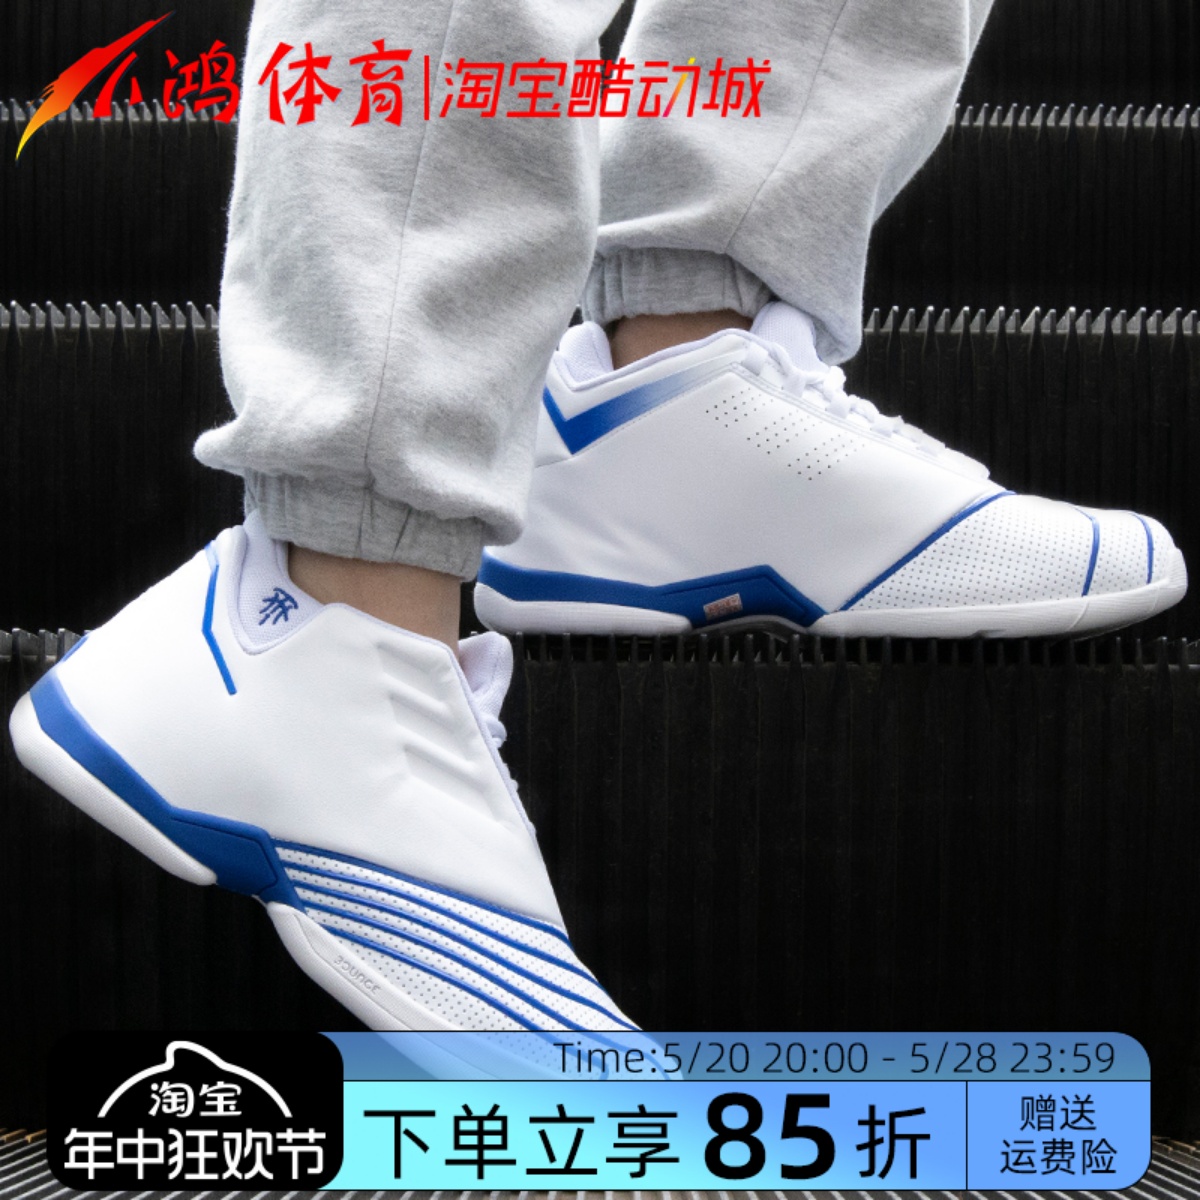 小鸿体育Adidas T-Mac 2 麦迪2代 白蓝 低帮 实战篮球鞋 FX4993